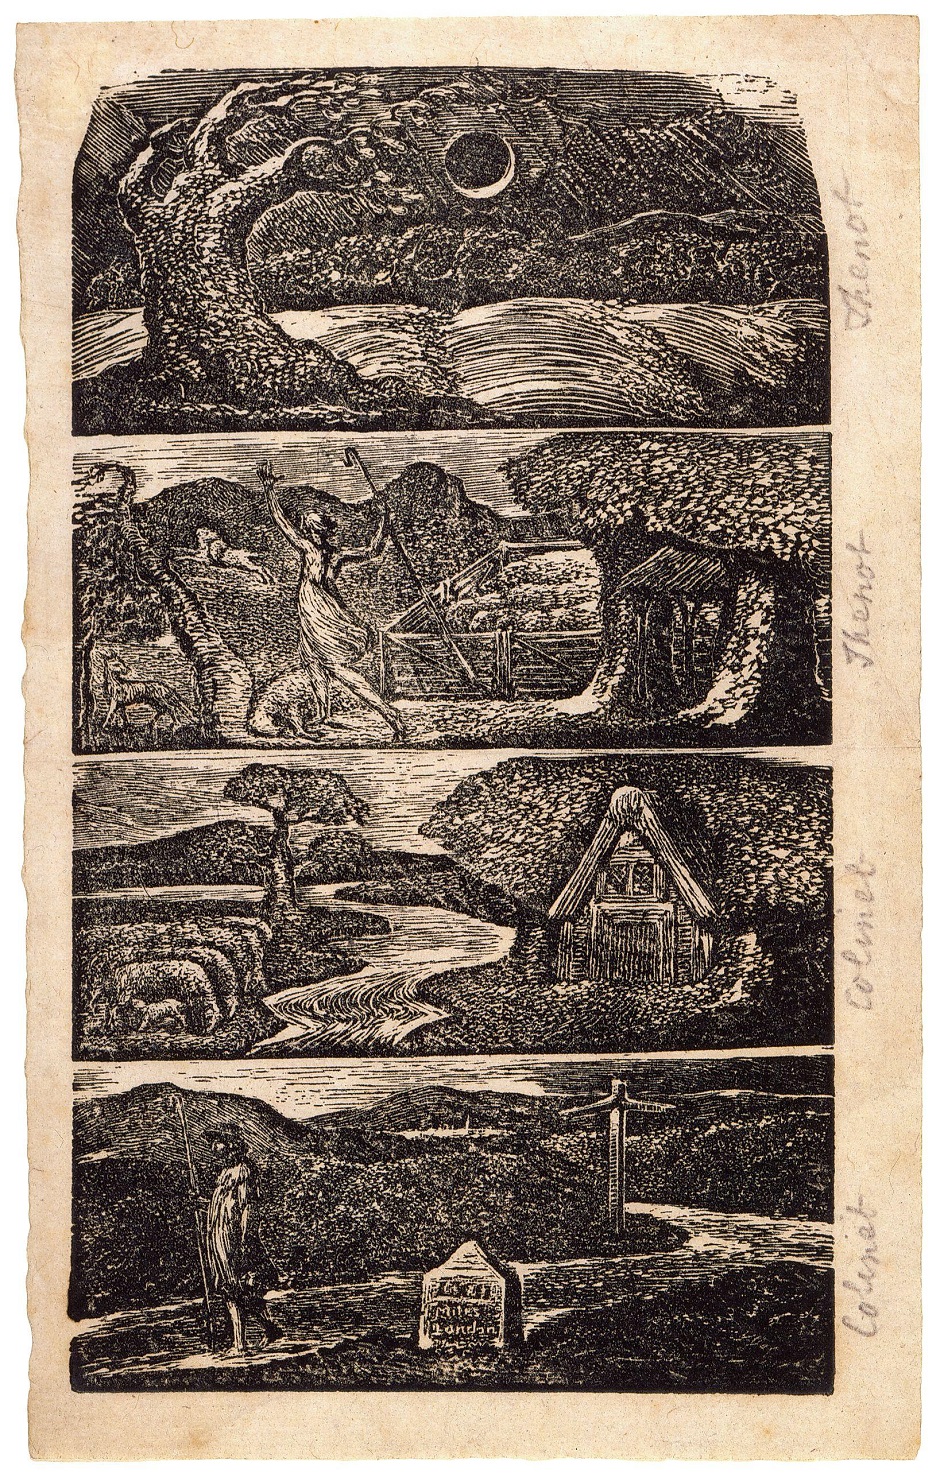 Ксилография. Йост Уильям Блейк. «Иллюстрации к поэме Вергилия», 1821